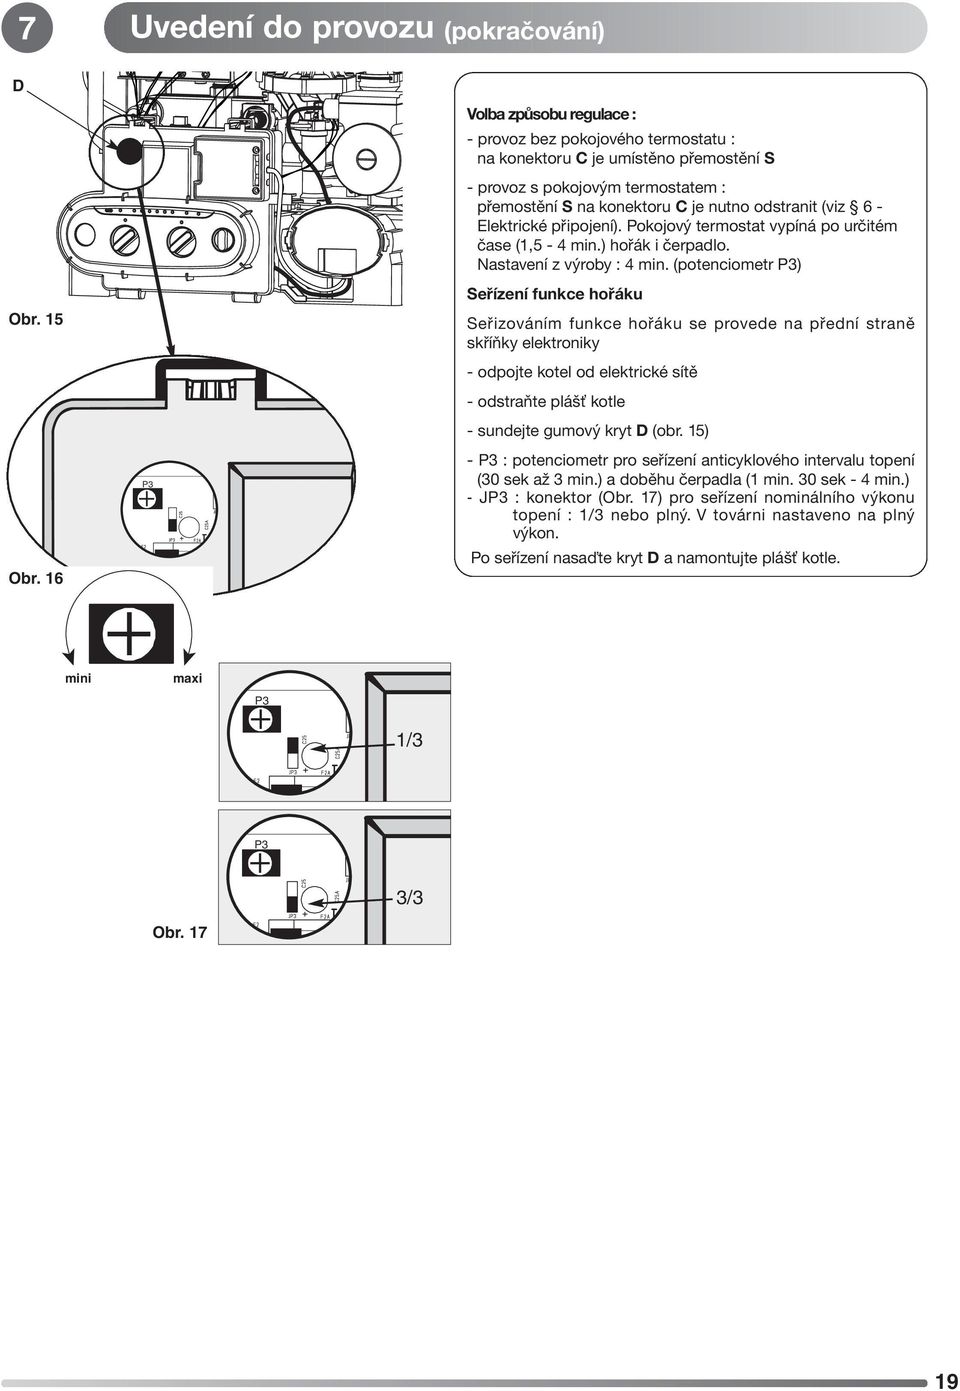 15 Seřizováním funkce hořáku se provede na přední straně skříňky elektroniky - odpojte kotel od elektrické sítě - odstraňte plášť kotle - sundejte gumový kryt D (obr. 15) Obr.